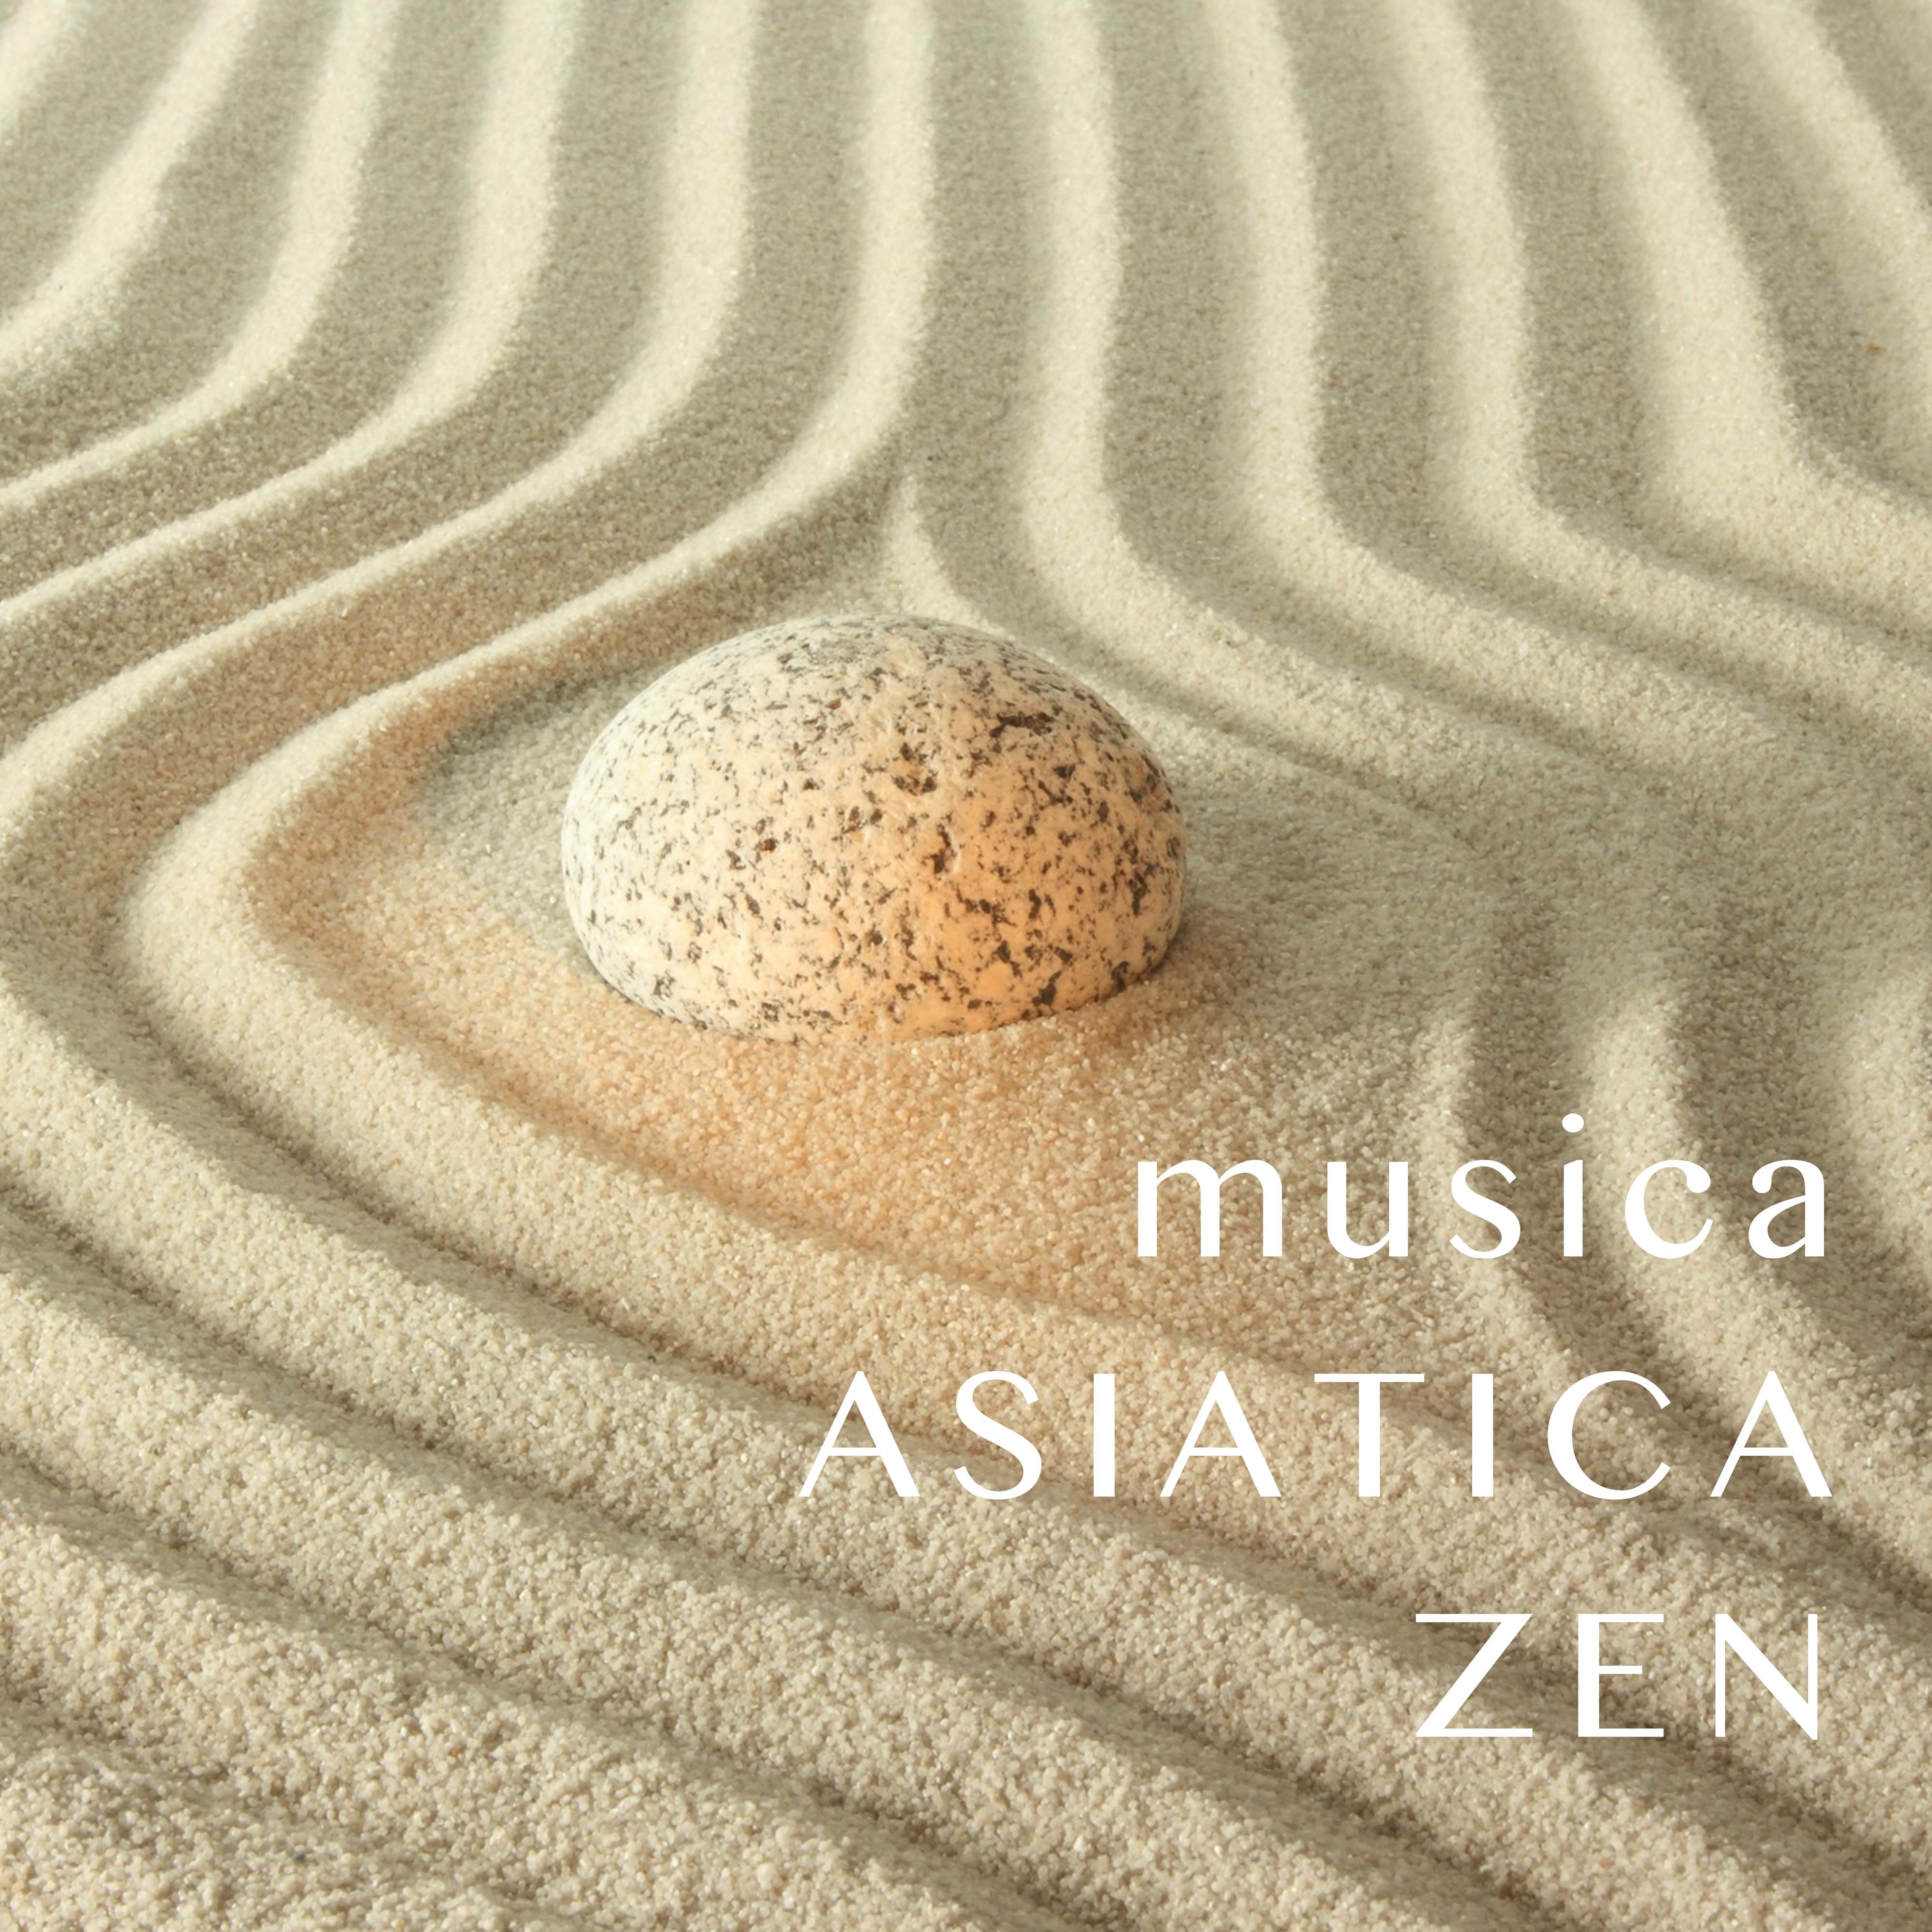 Musica Asiatica Zen per Spa e Centri Benessere - New Age Emotions